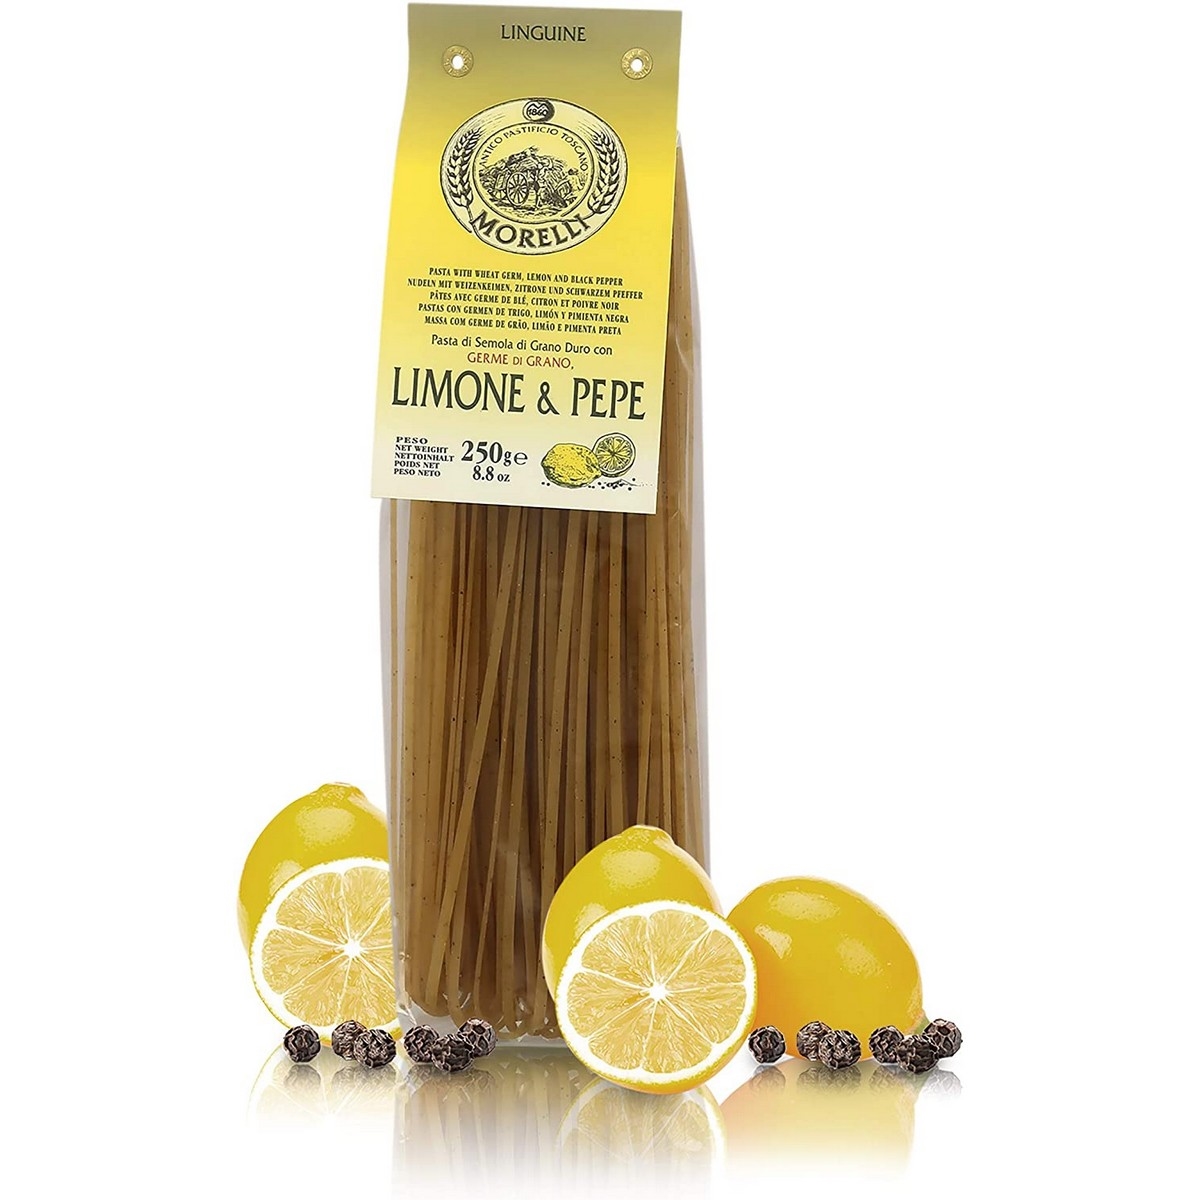 Anico pastorio morelli - pasta con sabor - espinacas - hojas de oliva - 500 g